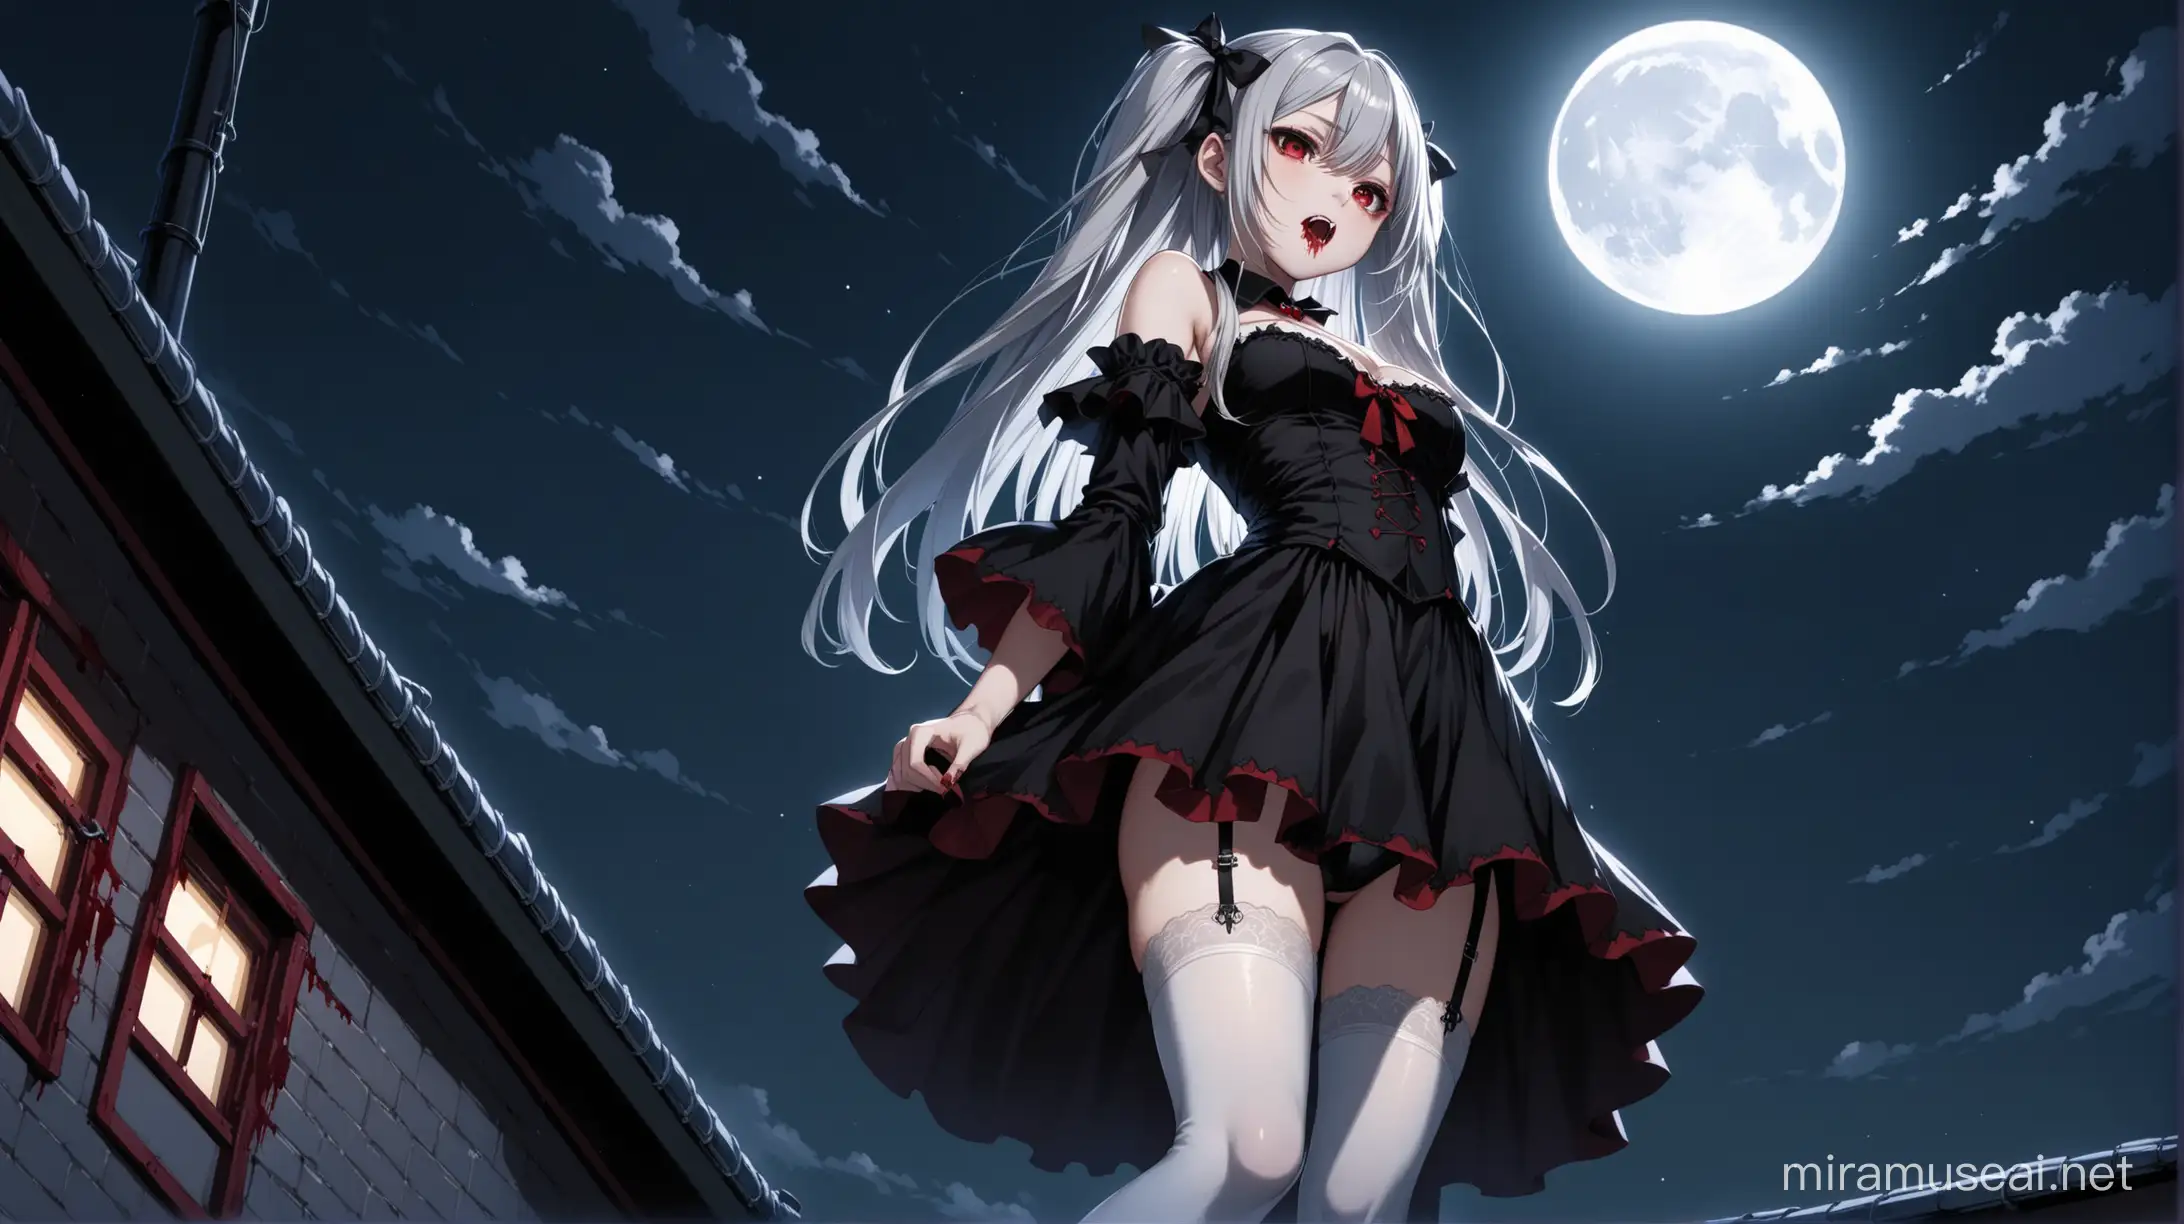 Gothic Vampire Girl on School Rooftop Under Full Moonlight